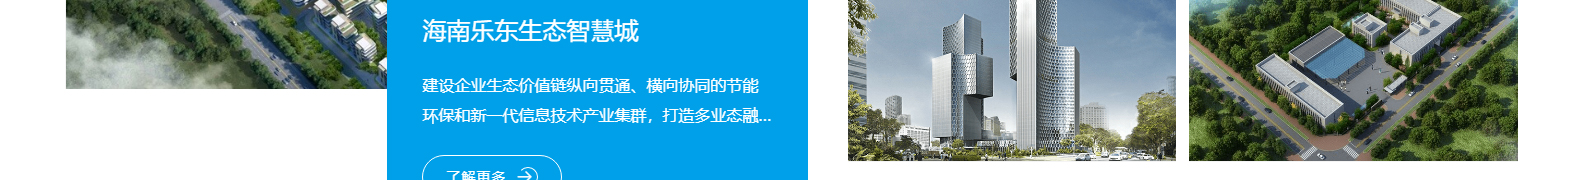 深圳市思达仪表有限公司_网站建设设计案例_响应式型网站制作案例